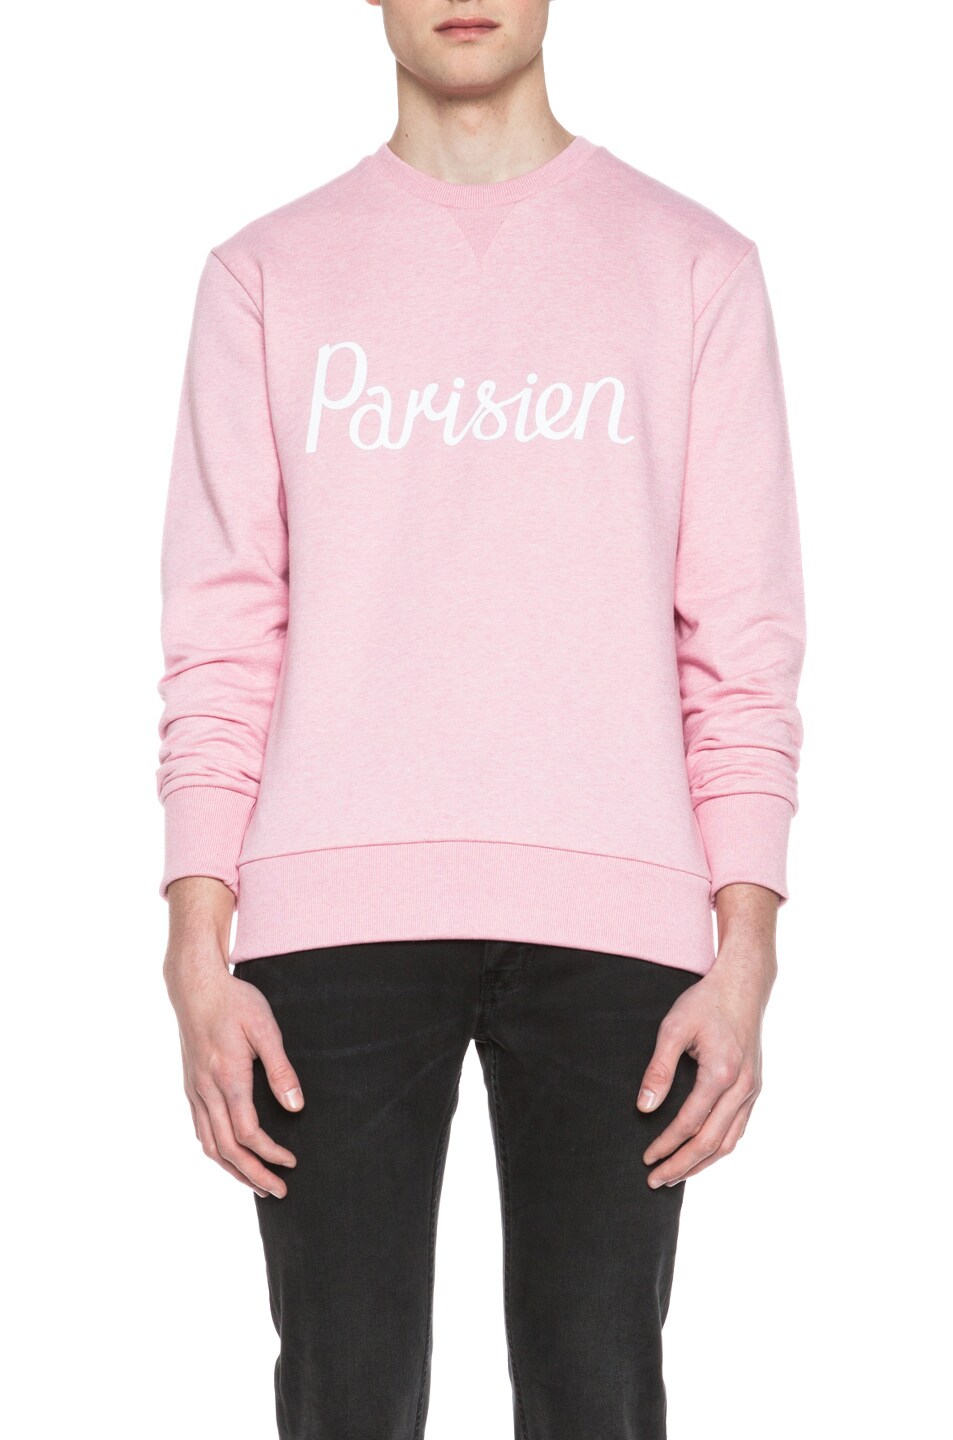 Image 1 of Kitsune Tee Parisien Cotton Sweater in Pink Melange